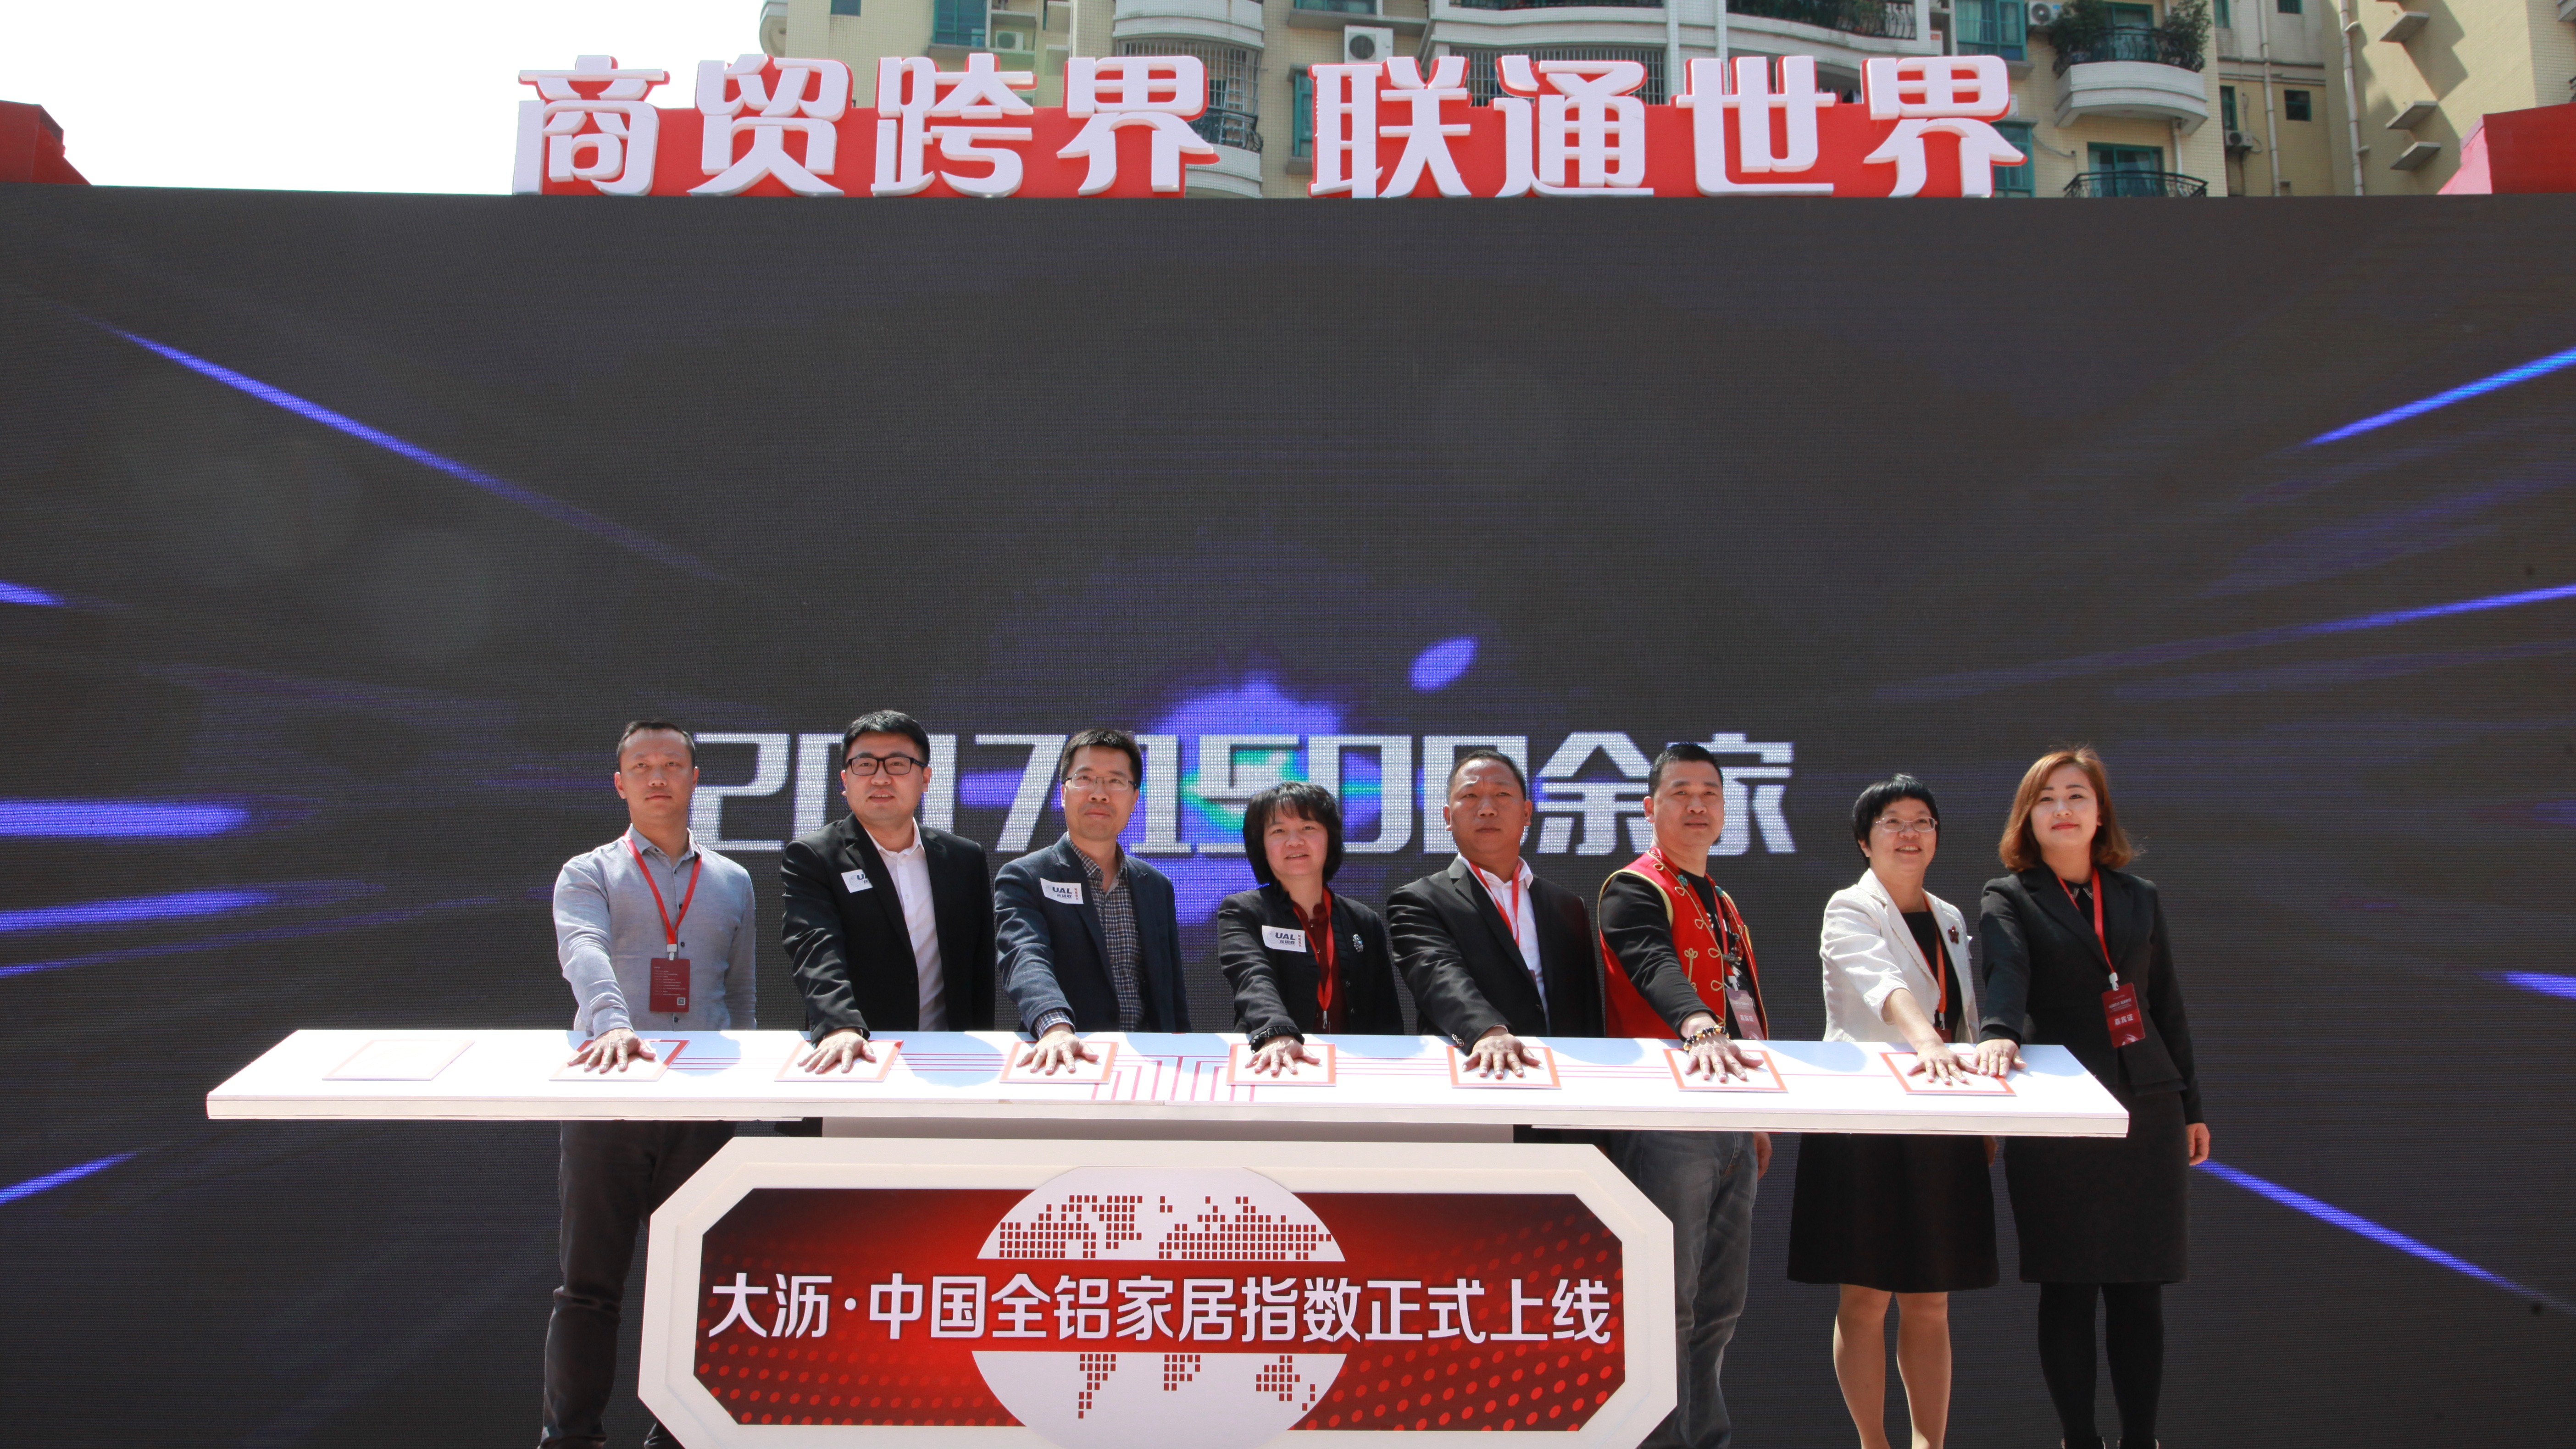 众铝联产业链整合服务平台，于2018年3月11日在“中国铝材第一镇”佛山市南海区大沥镇正式成立